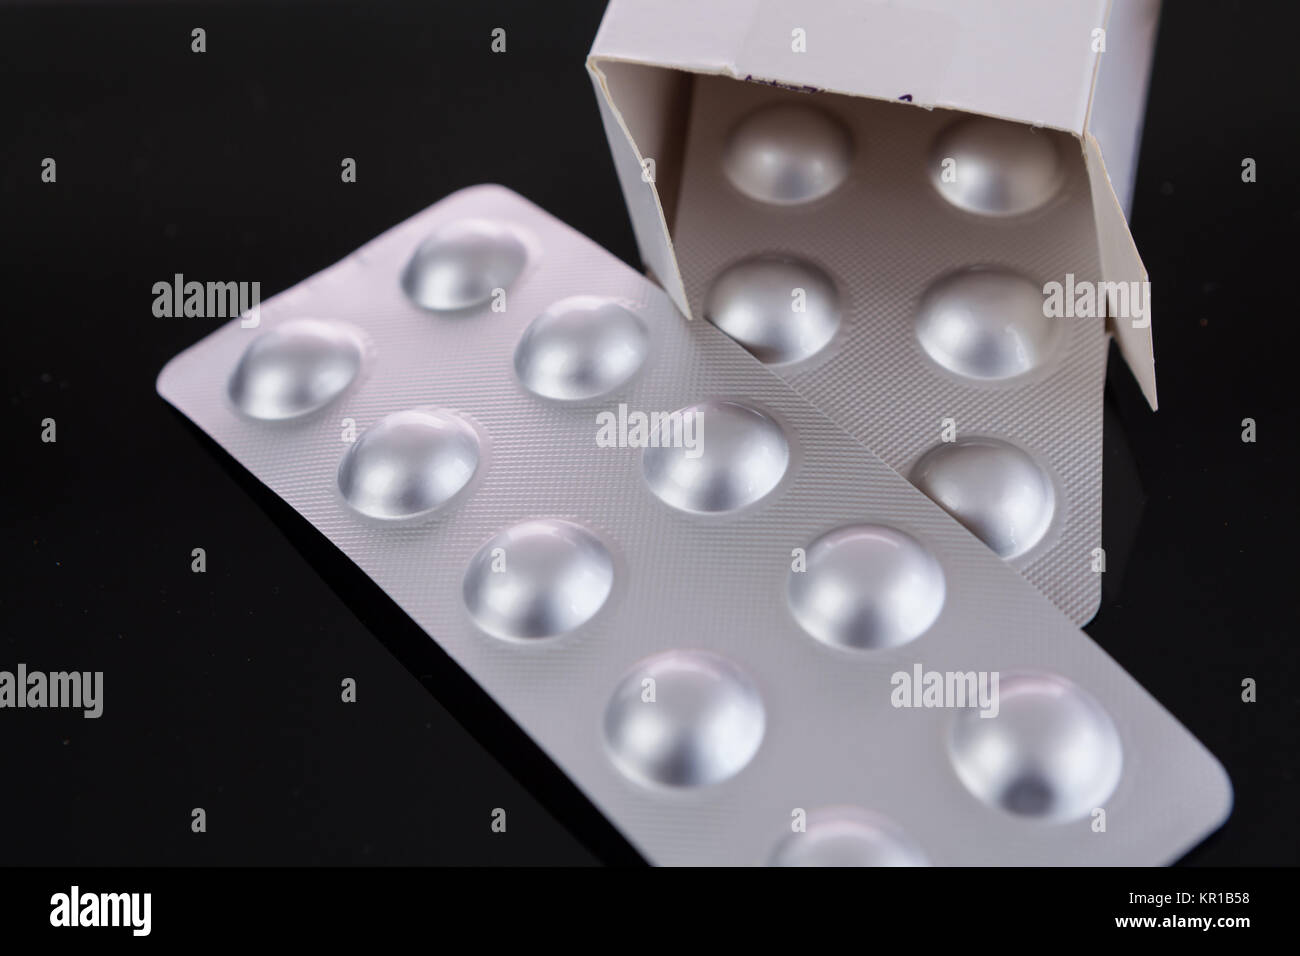 Silberne Blisterpackung von kleinen Pillen zusammen mit Schachtel mit zusätzlichen Packungen durch den offenen Deckel über einem schwarzen Hintergrund in einem Gesundheits-Konzept Stock Photo